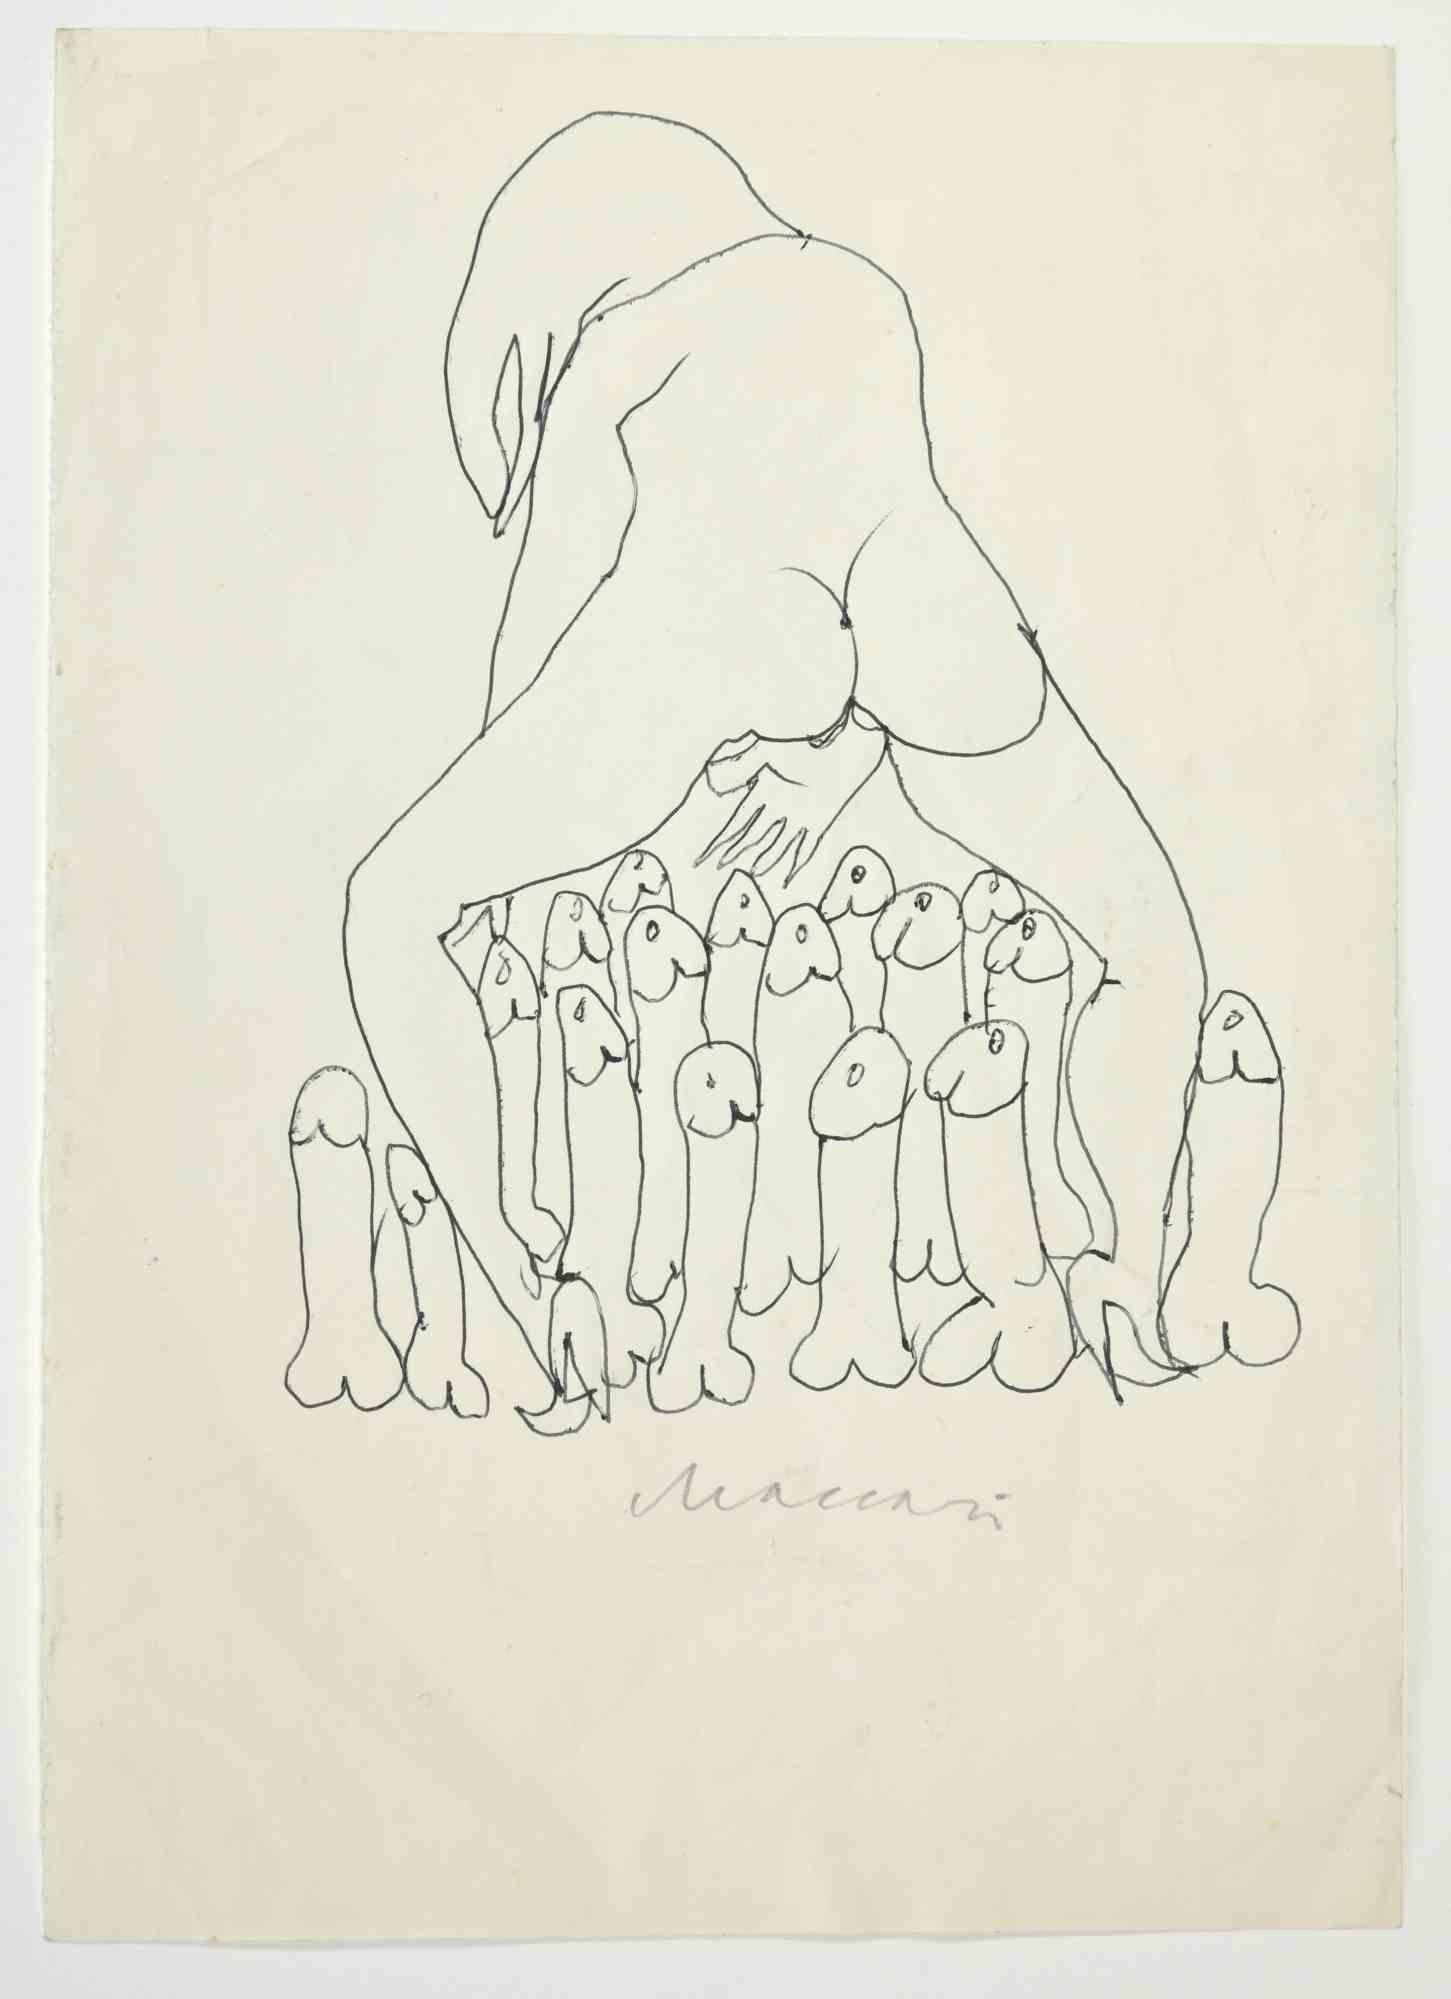 Erotic Scene ist eine Federzeichnung realisiert von Mino Maccari  (1924-1989) in den 1970er Jahren.

Handsigniert auf der Unterseite, mit einer weiteren Zeichnung auf der Rückseite.

Guter Zustand.

Mino Maccari (Siena, 1924-Rom, 16. Juni 1989) war